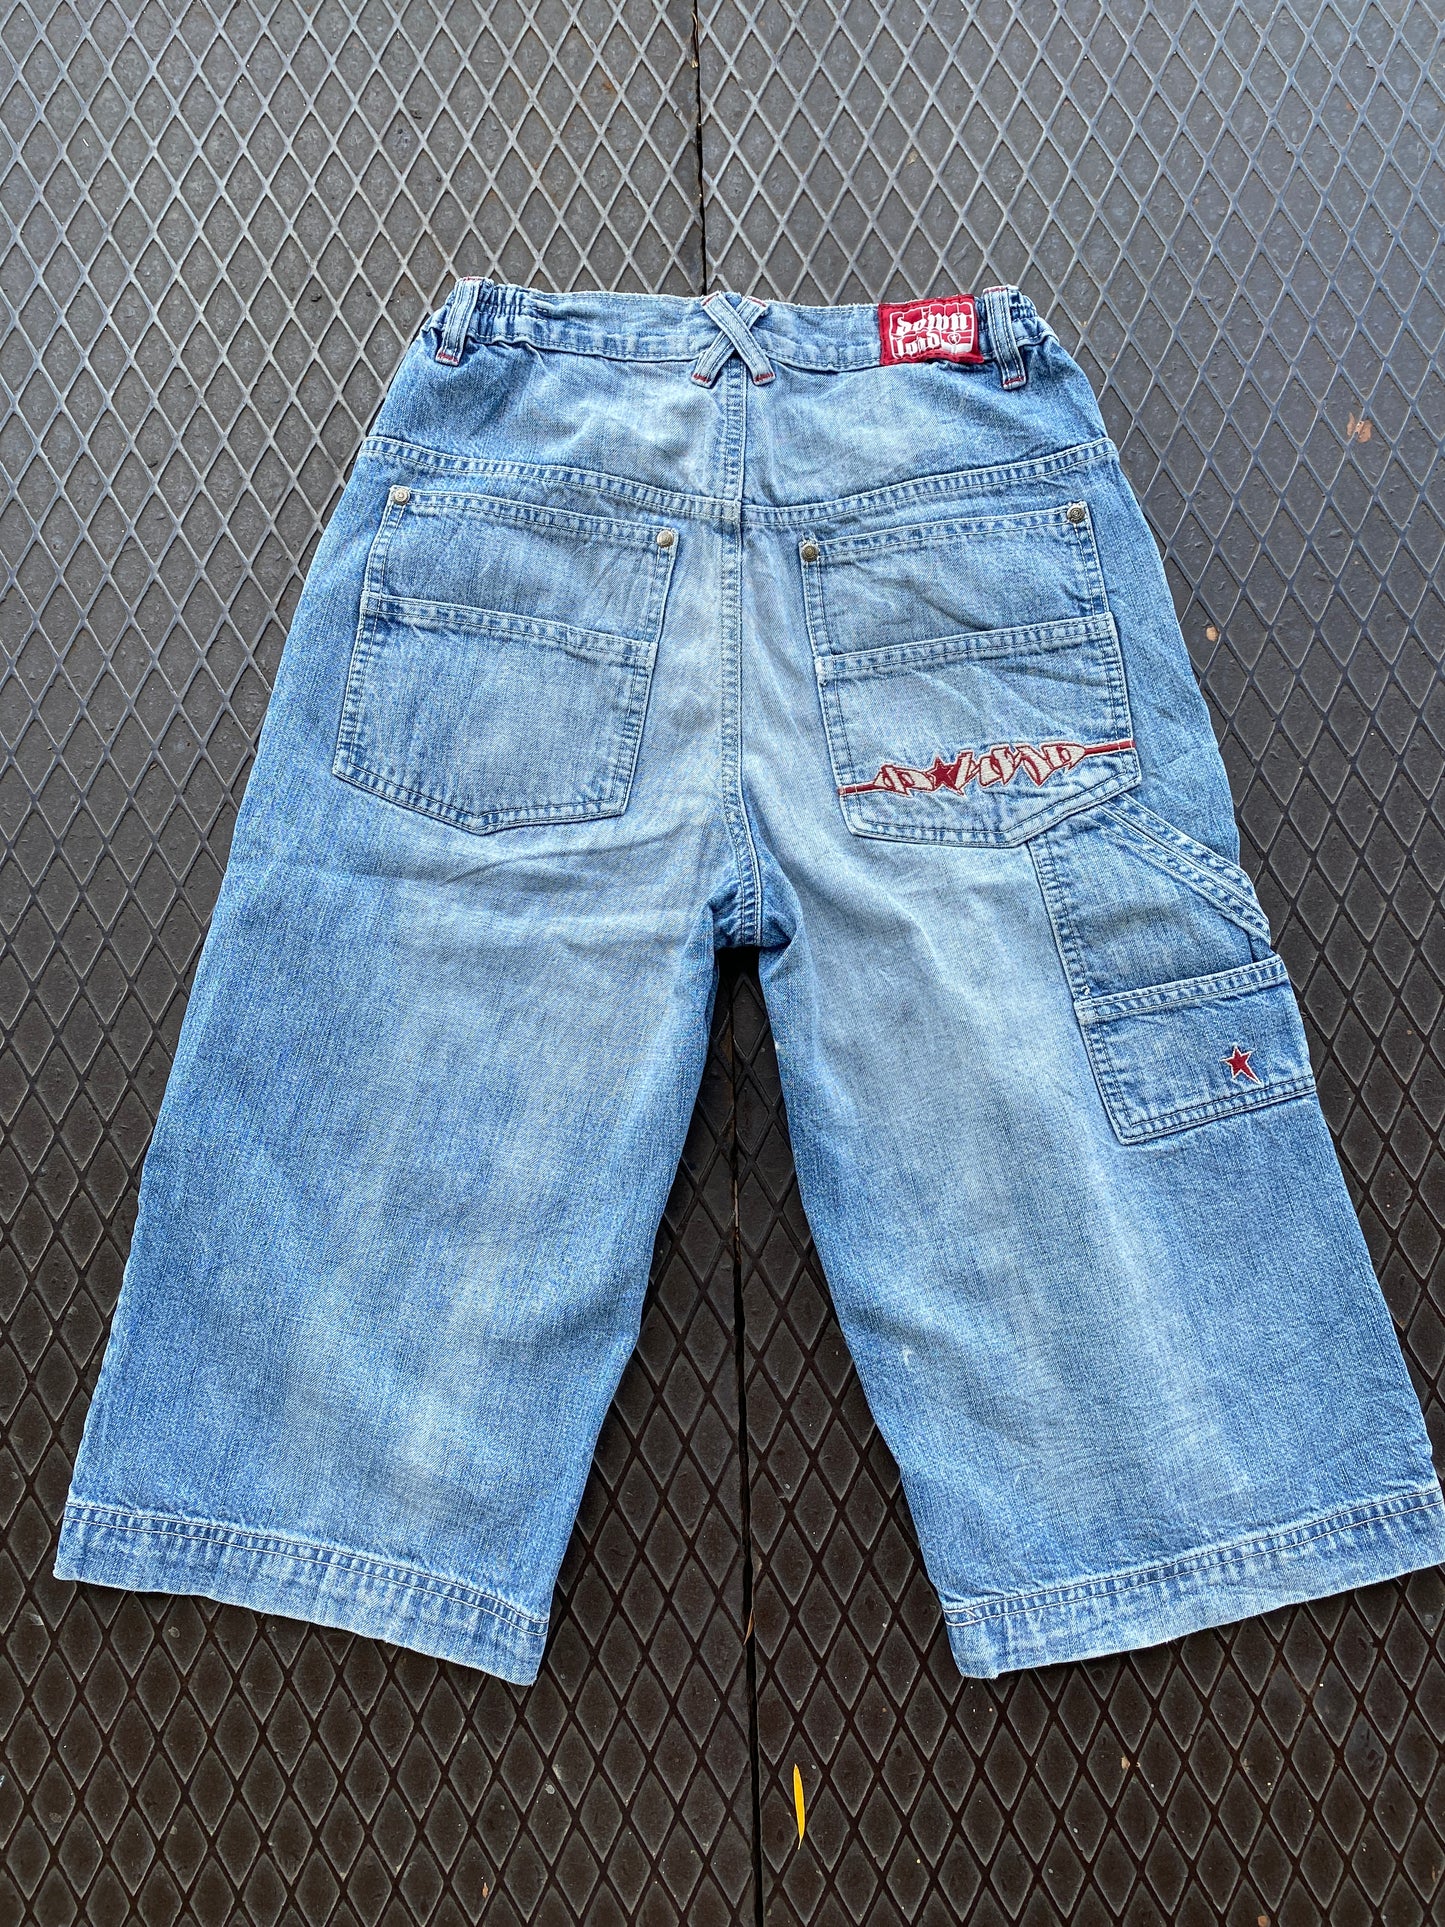 28 - Download Light Blue Denim Cargo Shorts Embroidered Pocket